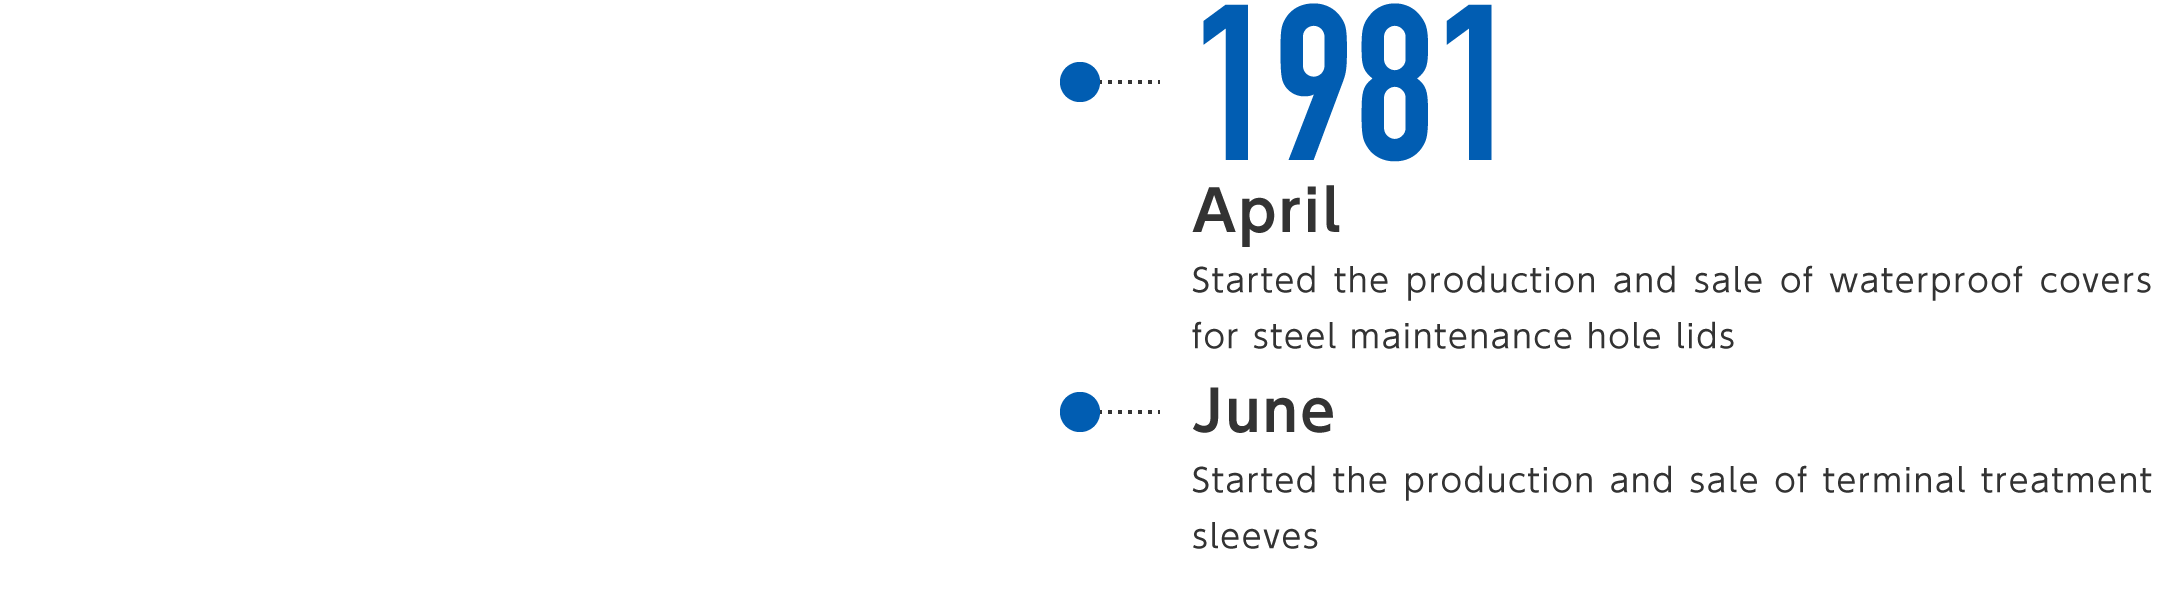 1981年4月-マンホール鉄蓋用防水キャップの製造・販売を開始、6月-端末処理用スリーブの製造・販売を開始